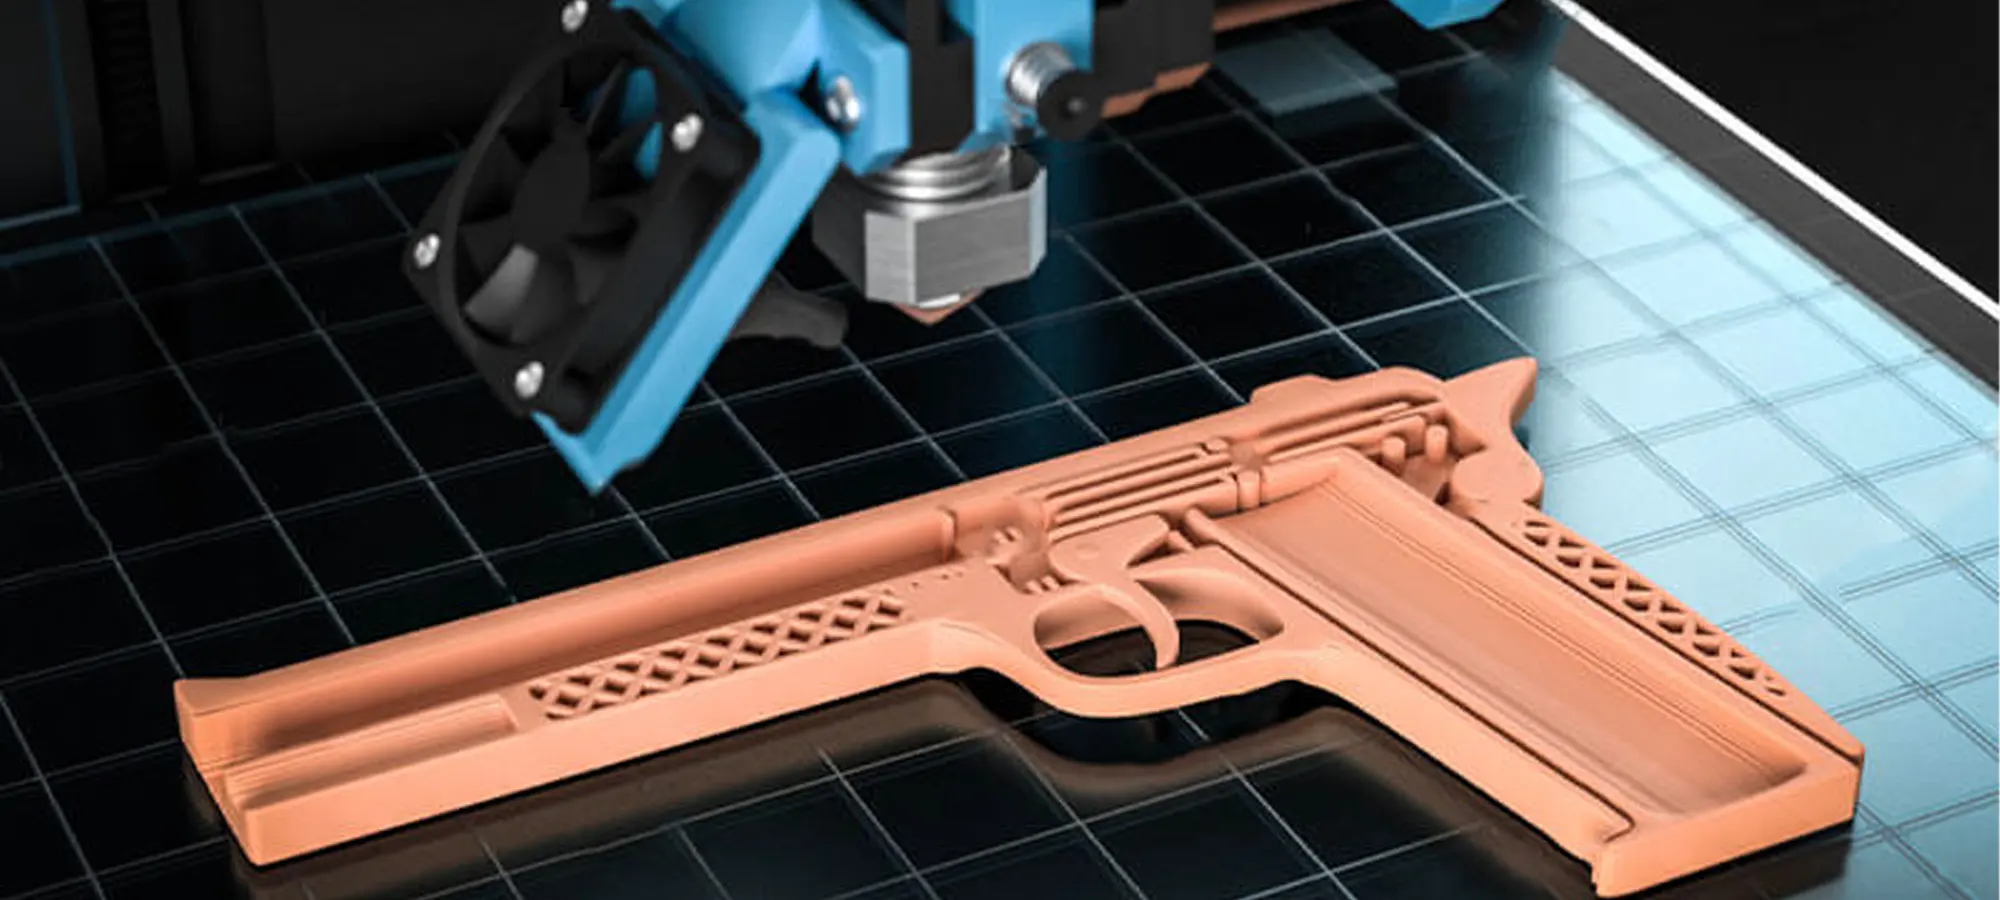 3D printed ultem gun